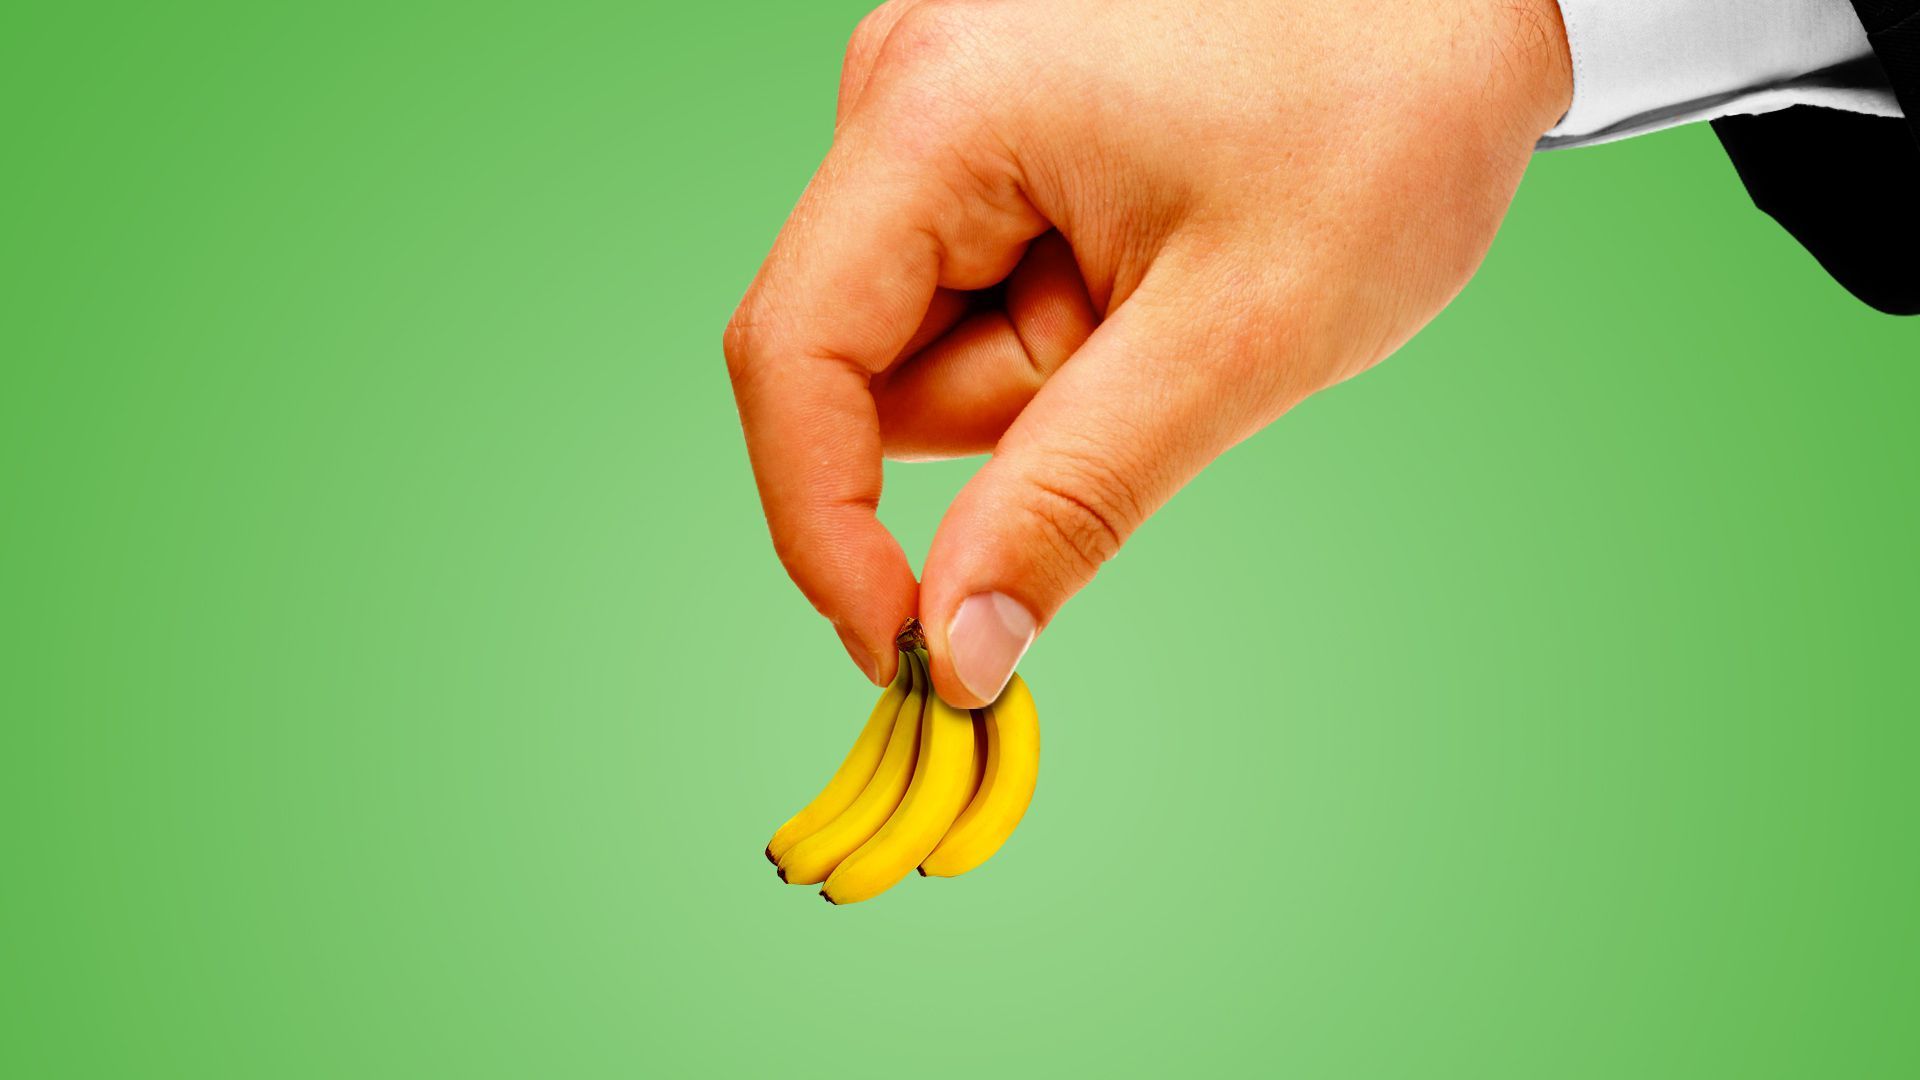 Hand holding small banana